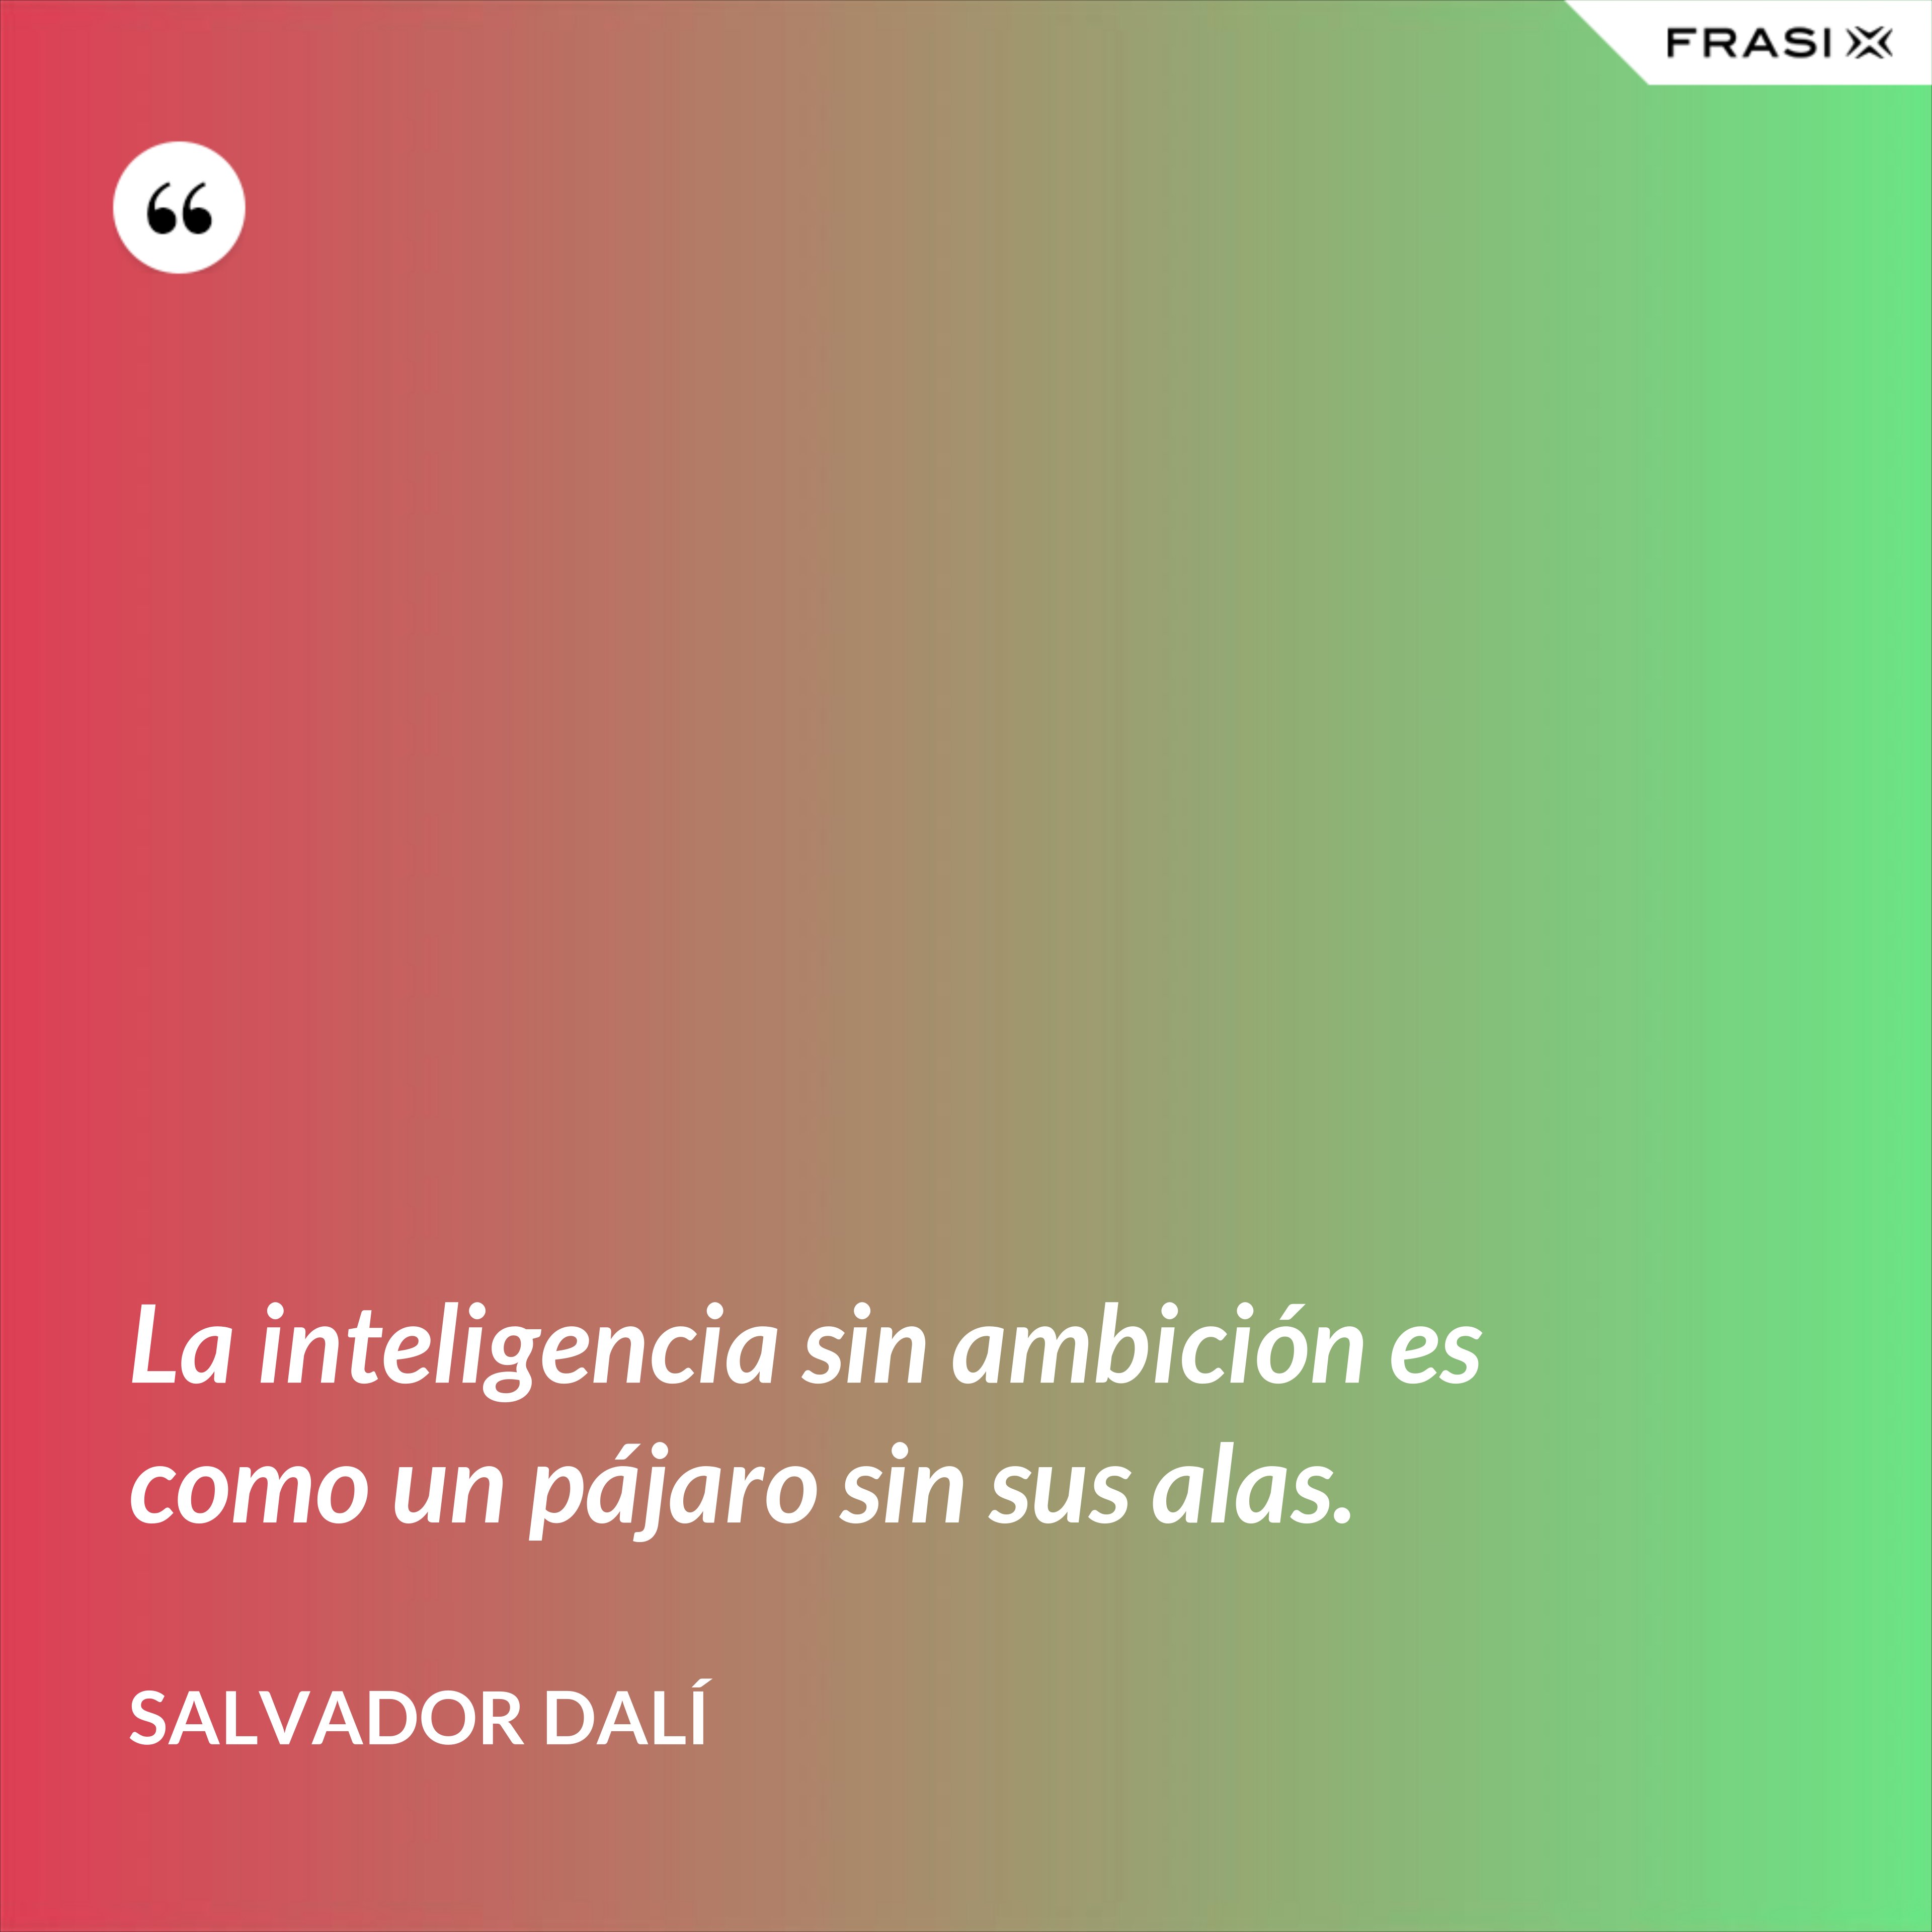 La inteligencia sin ambición es como un pájaro sin sus alas. - Salvador Dalí